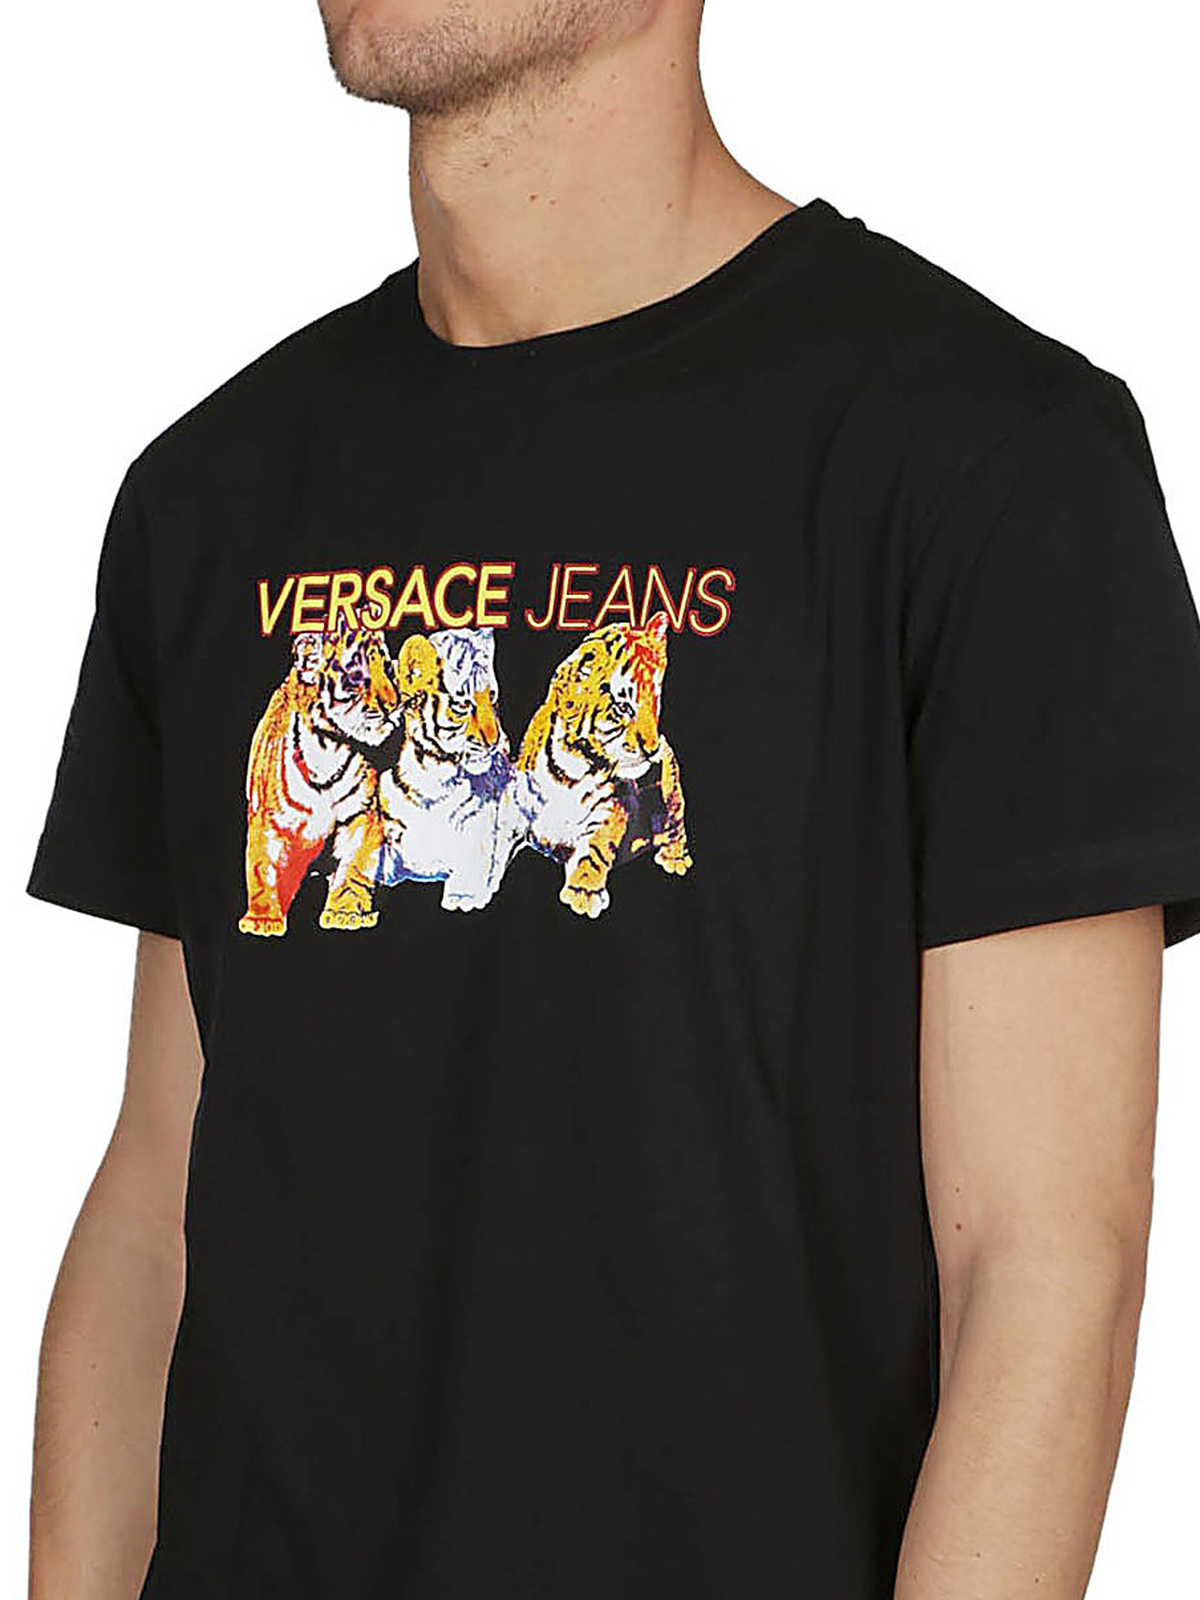 versace jeans t shirt black